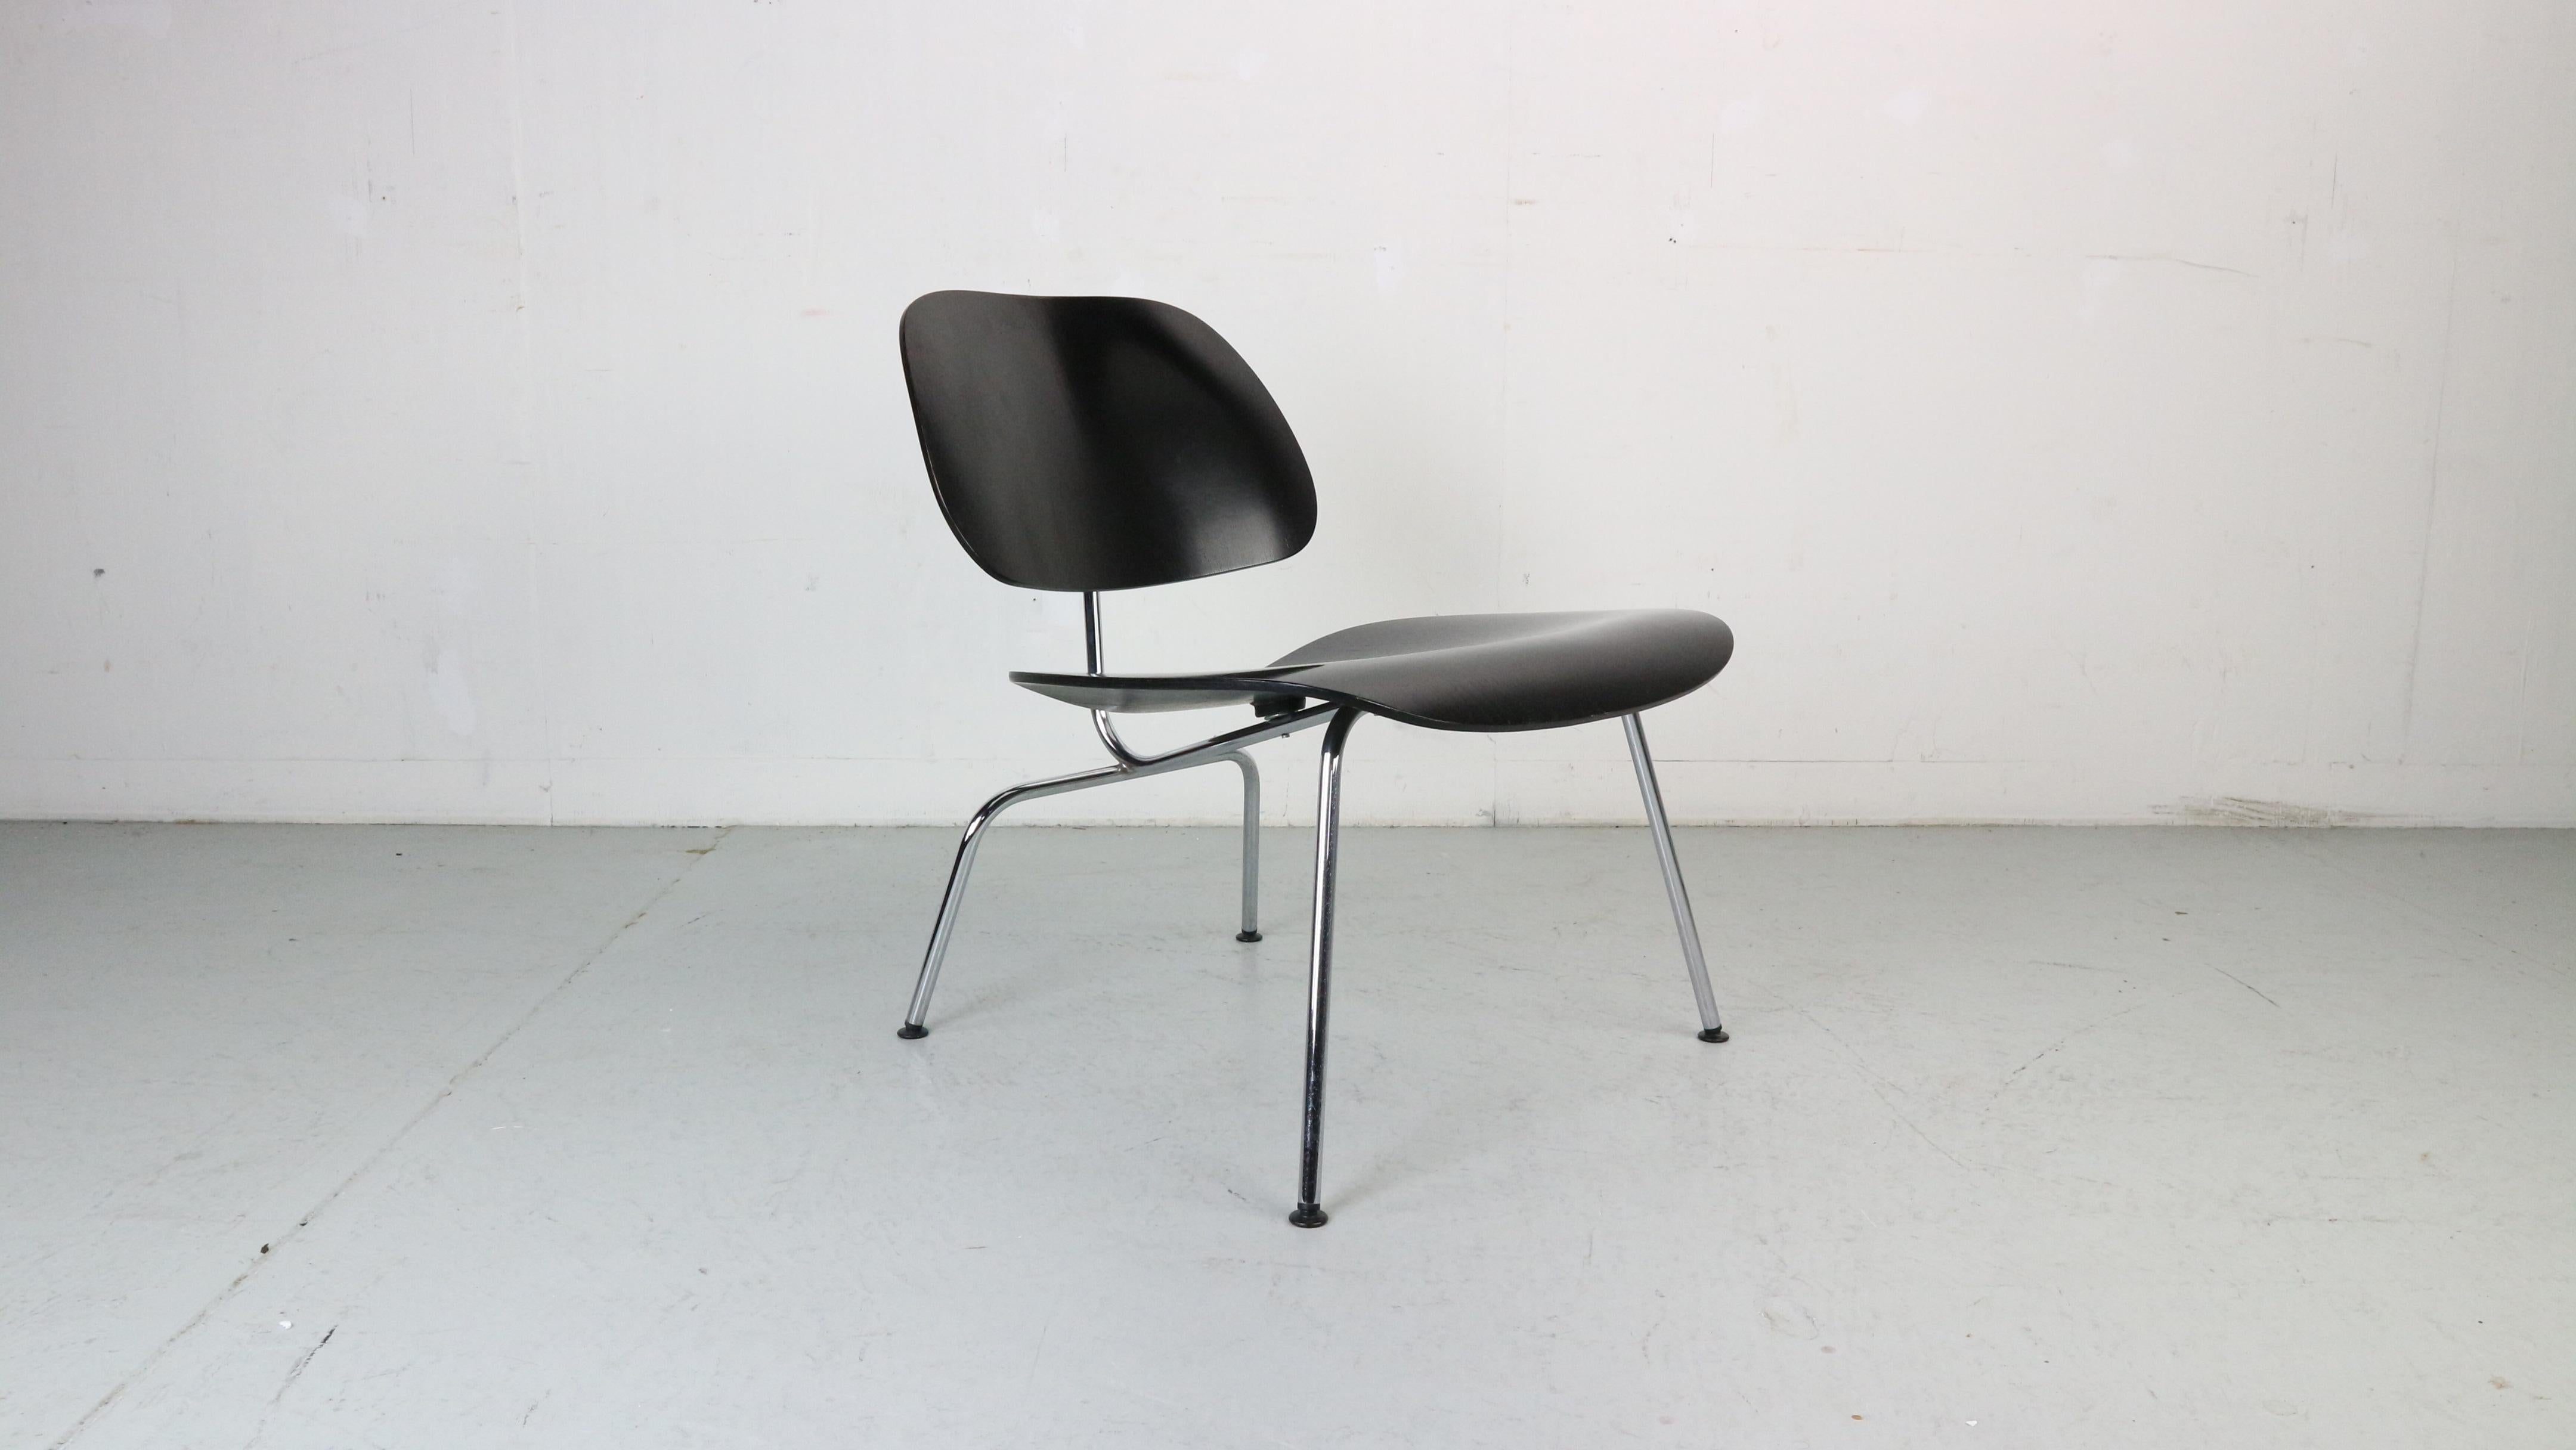 Loungesessel, entworfen von Charles und Ray Eames für Vitra, 1999.

Der von Charles und Ray Eames entworfene Vitra LCM Chair ist das Ergebnis jahrelanger Experimente, bei denen die Designer nach neuen Verfahren suchten, um dreidimensional geformtes